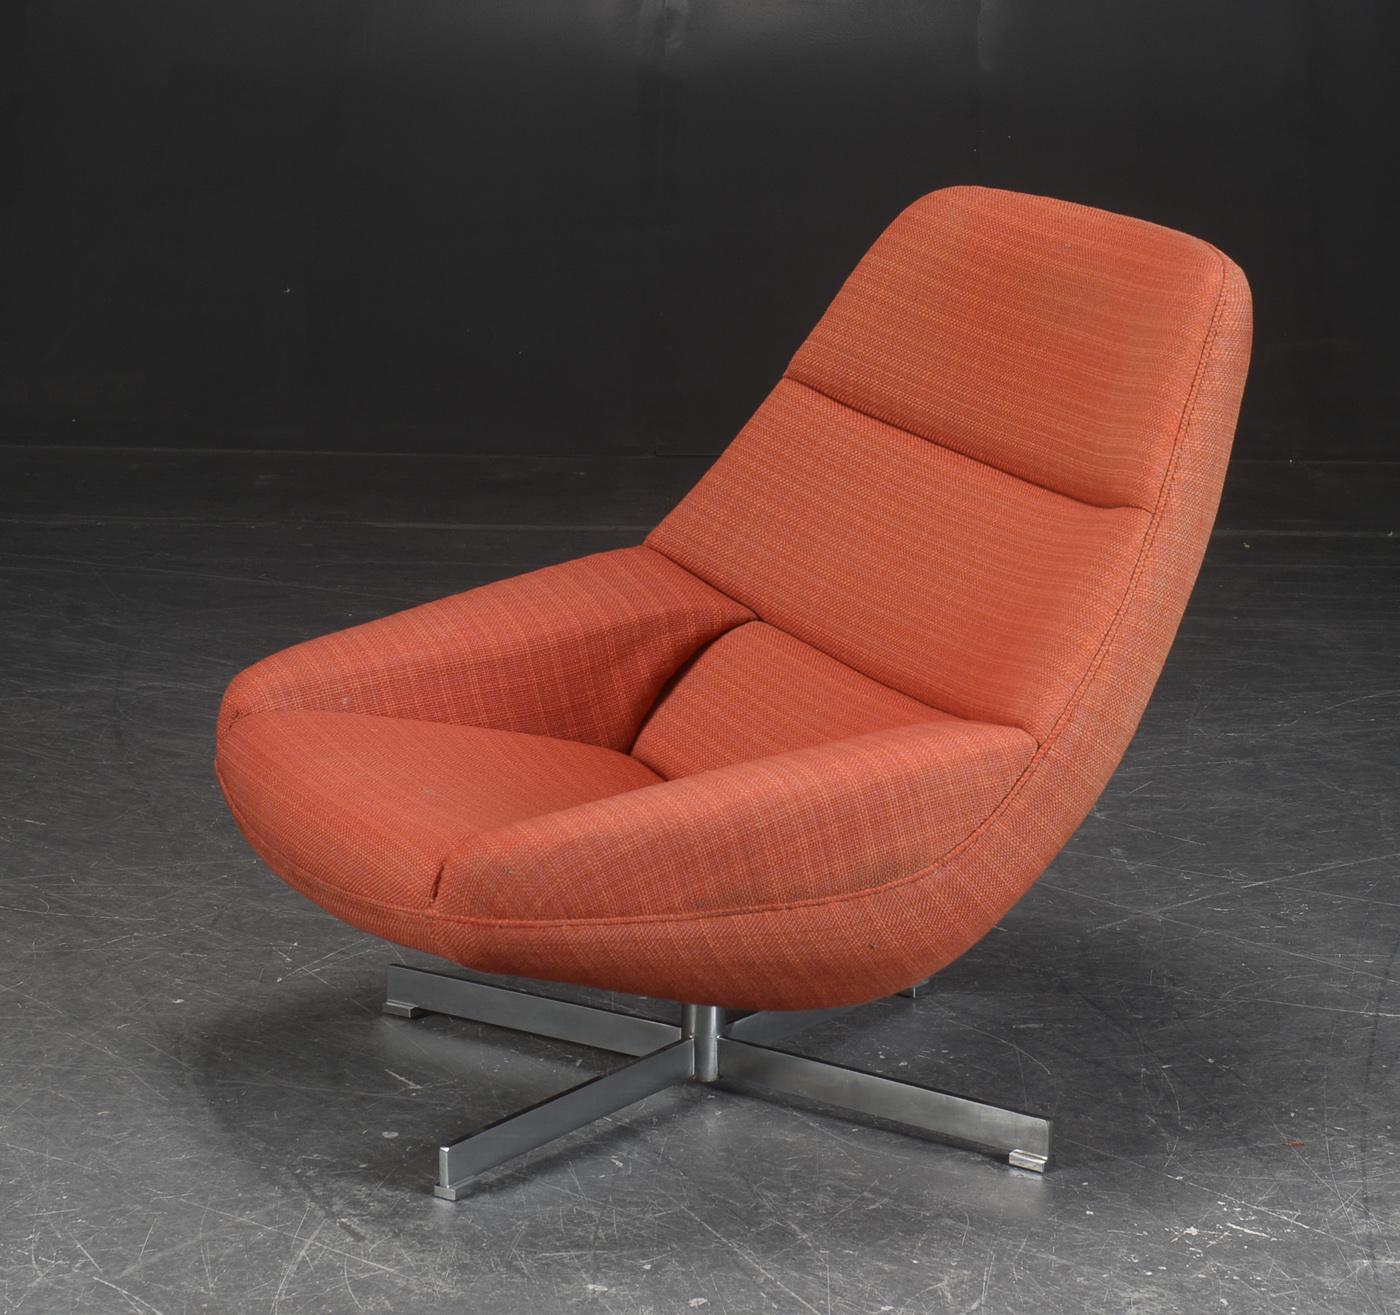 Seltener, von Illum Wikkelso entworfener, drehbarer Sessel Modell ML91, hergestellt von A. Mikael Laursen um 1960 in Dänemark. Dies ist eine seltene Variante des ML91 mit einem Aluminium-Drehfuß, wo das Modell normalerweise mit einem Scherenfuß aus